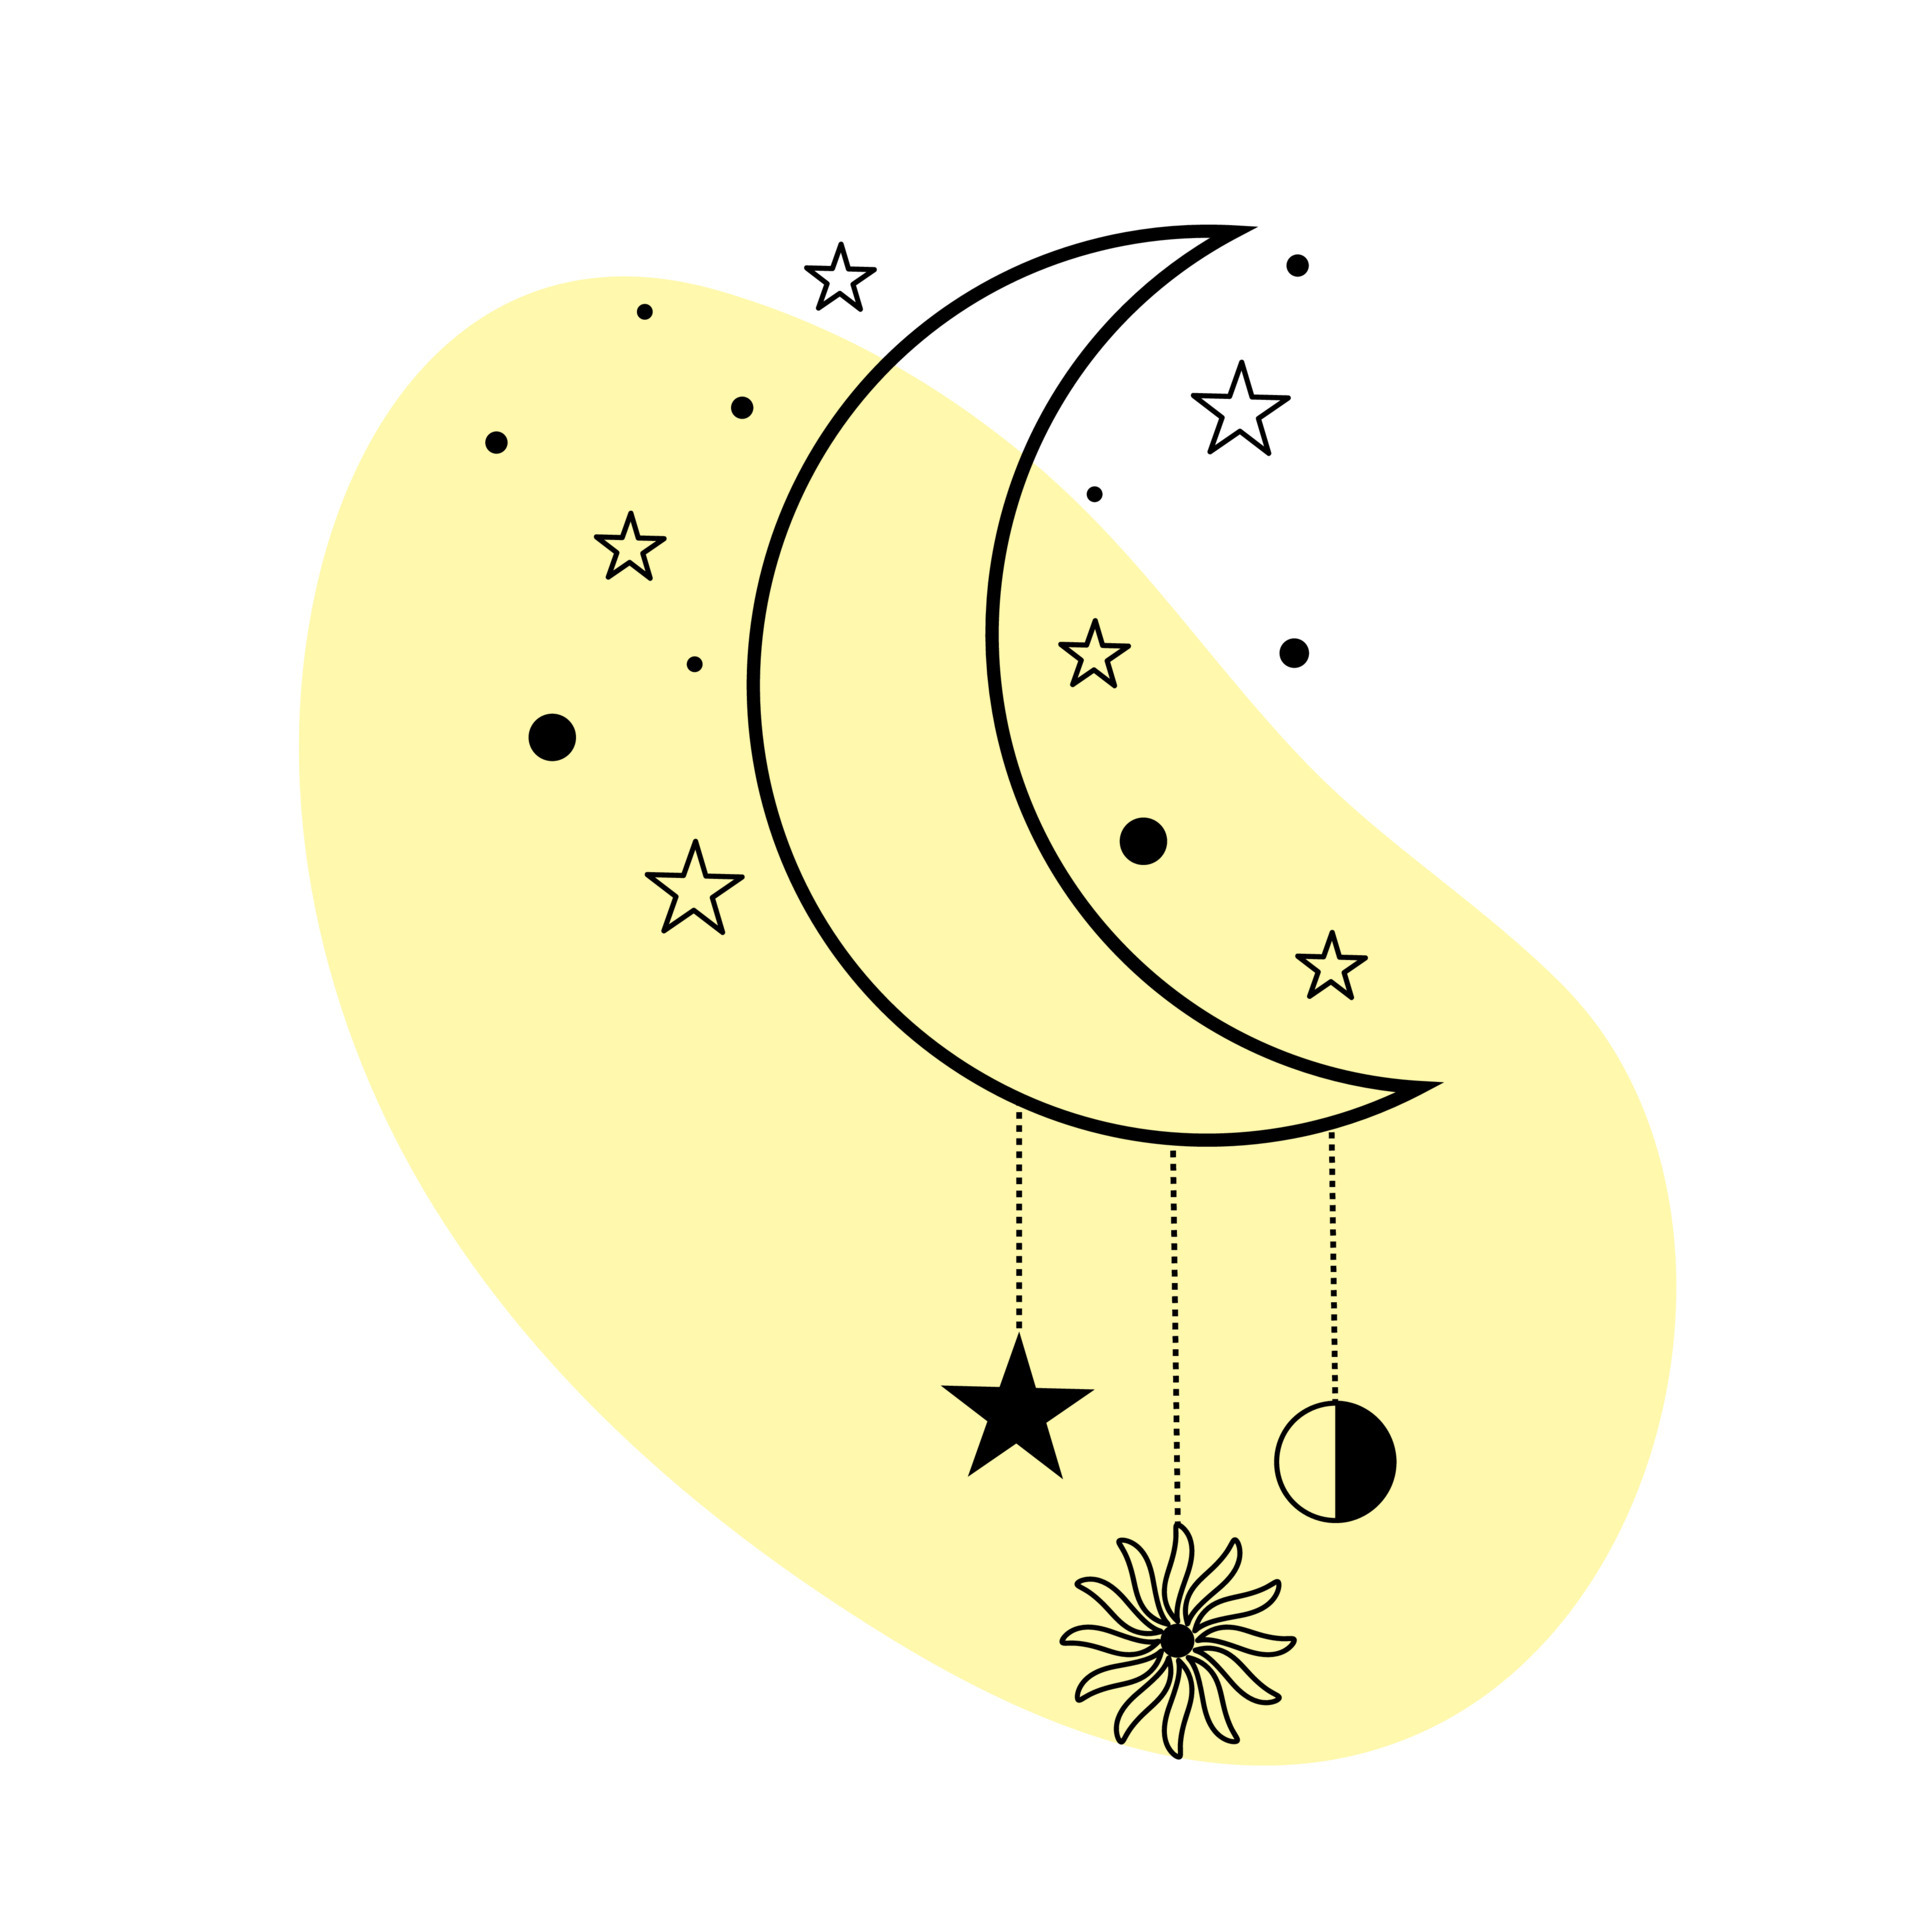 maan met sterren en zon in fijne tekeningen. spirituele symbool hemelse ruimte. 4749457 Vectorkunst bij Vecteezy